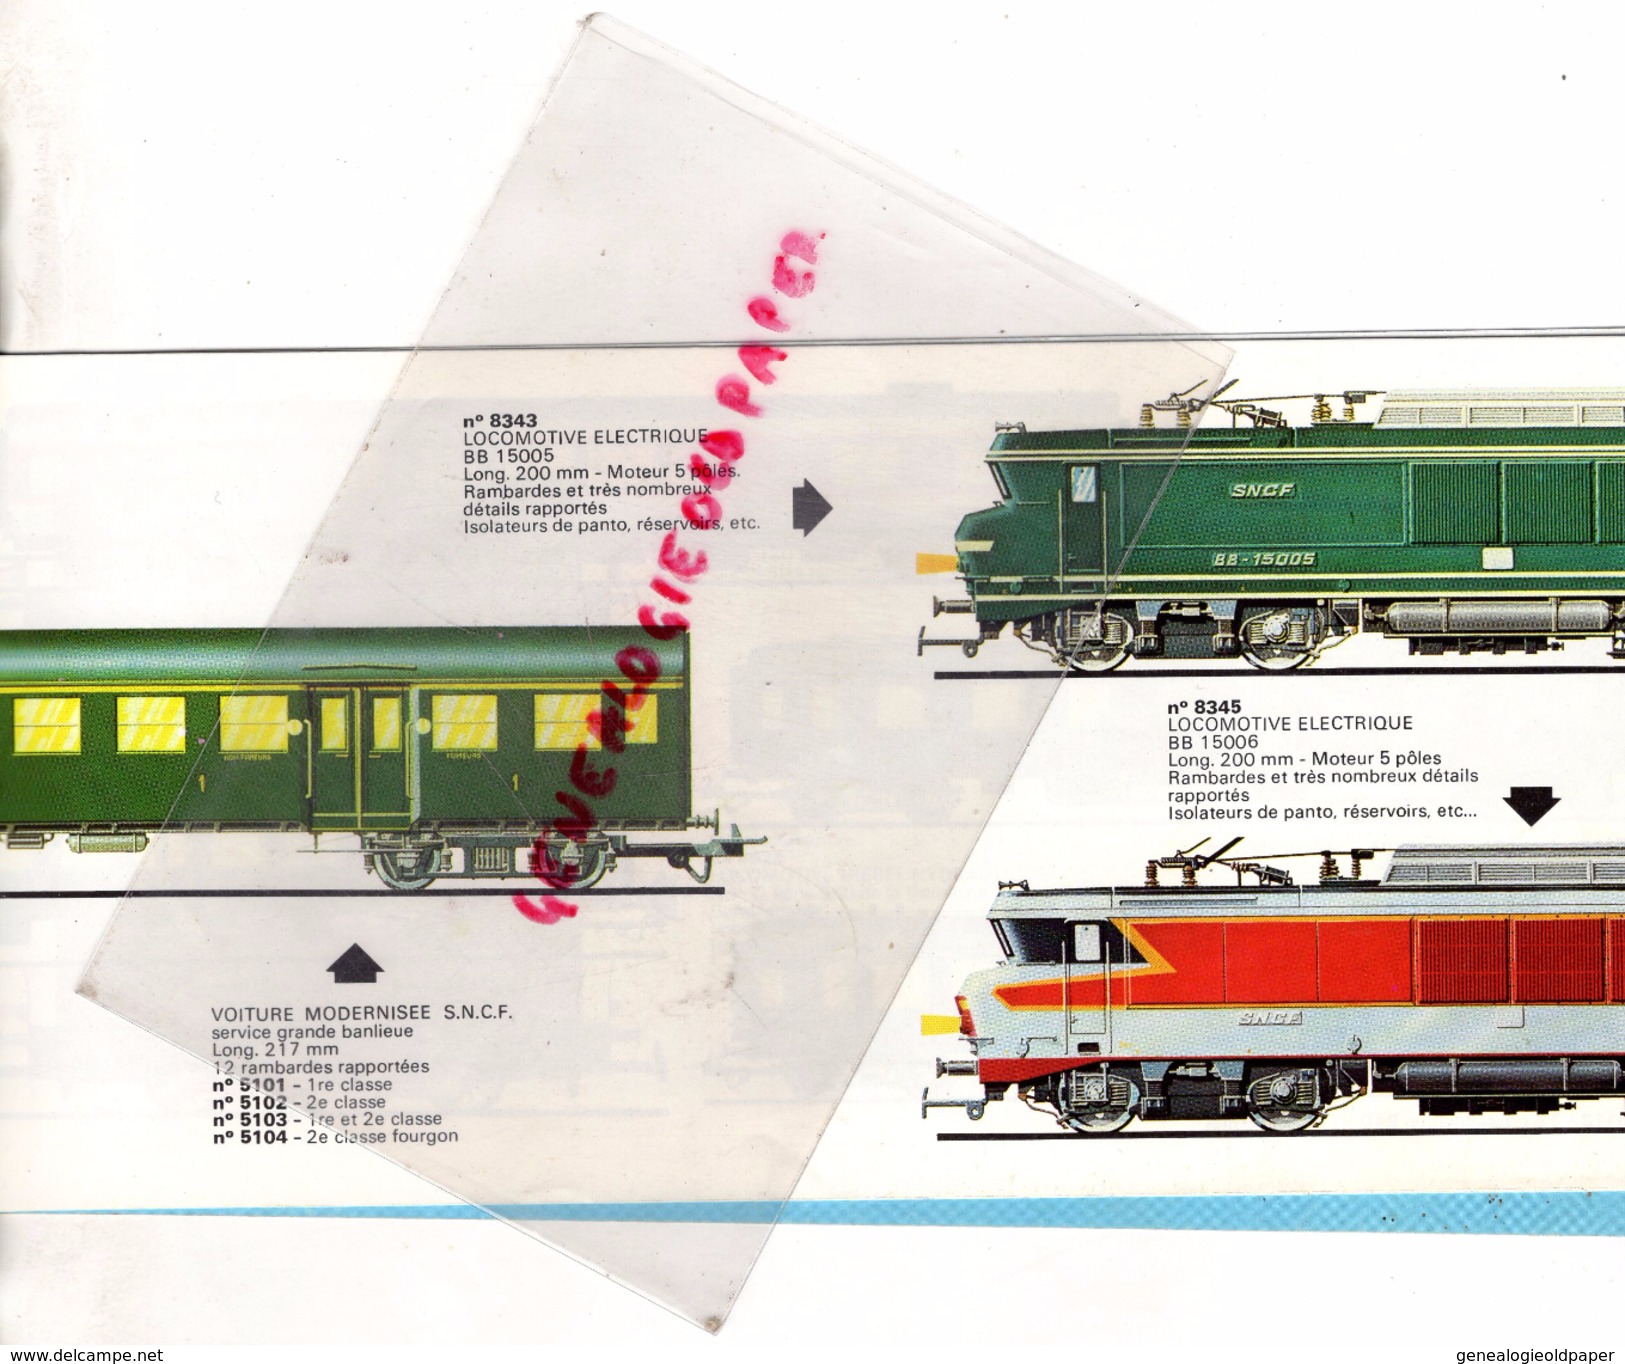 CATALOGUE JOUEF -1975 TRAINS TRAIN - JOUETS- LOCOMOTIVE- - Historical Documents